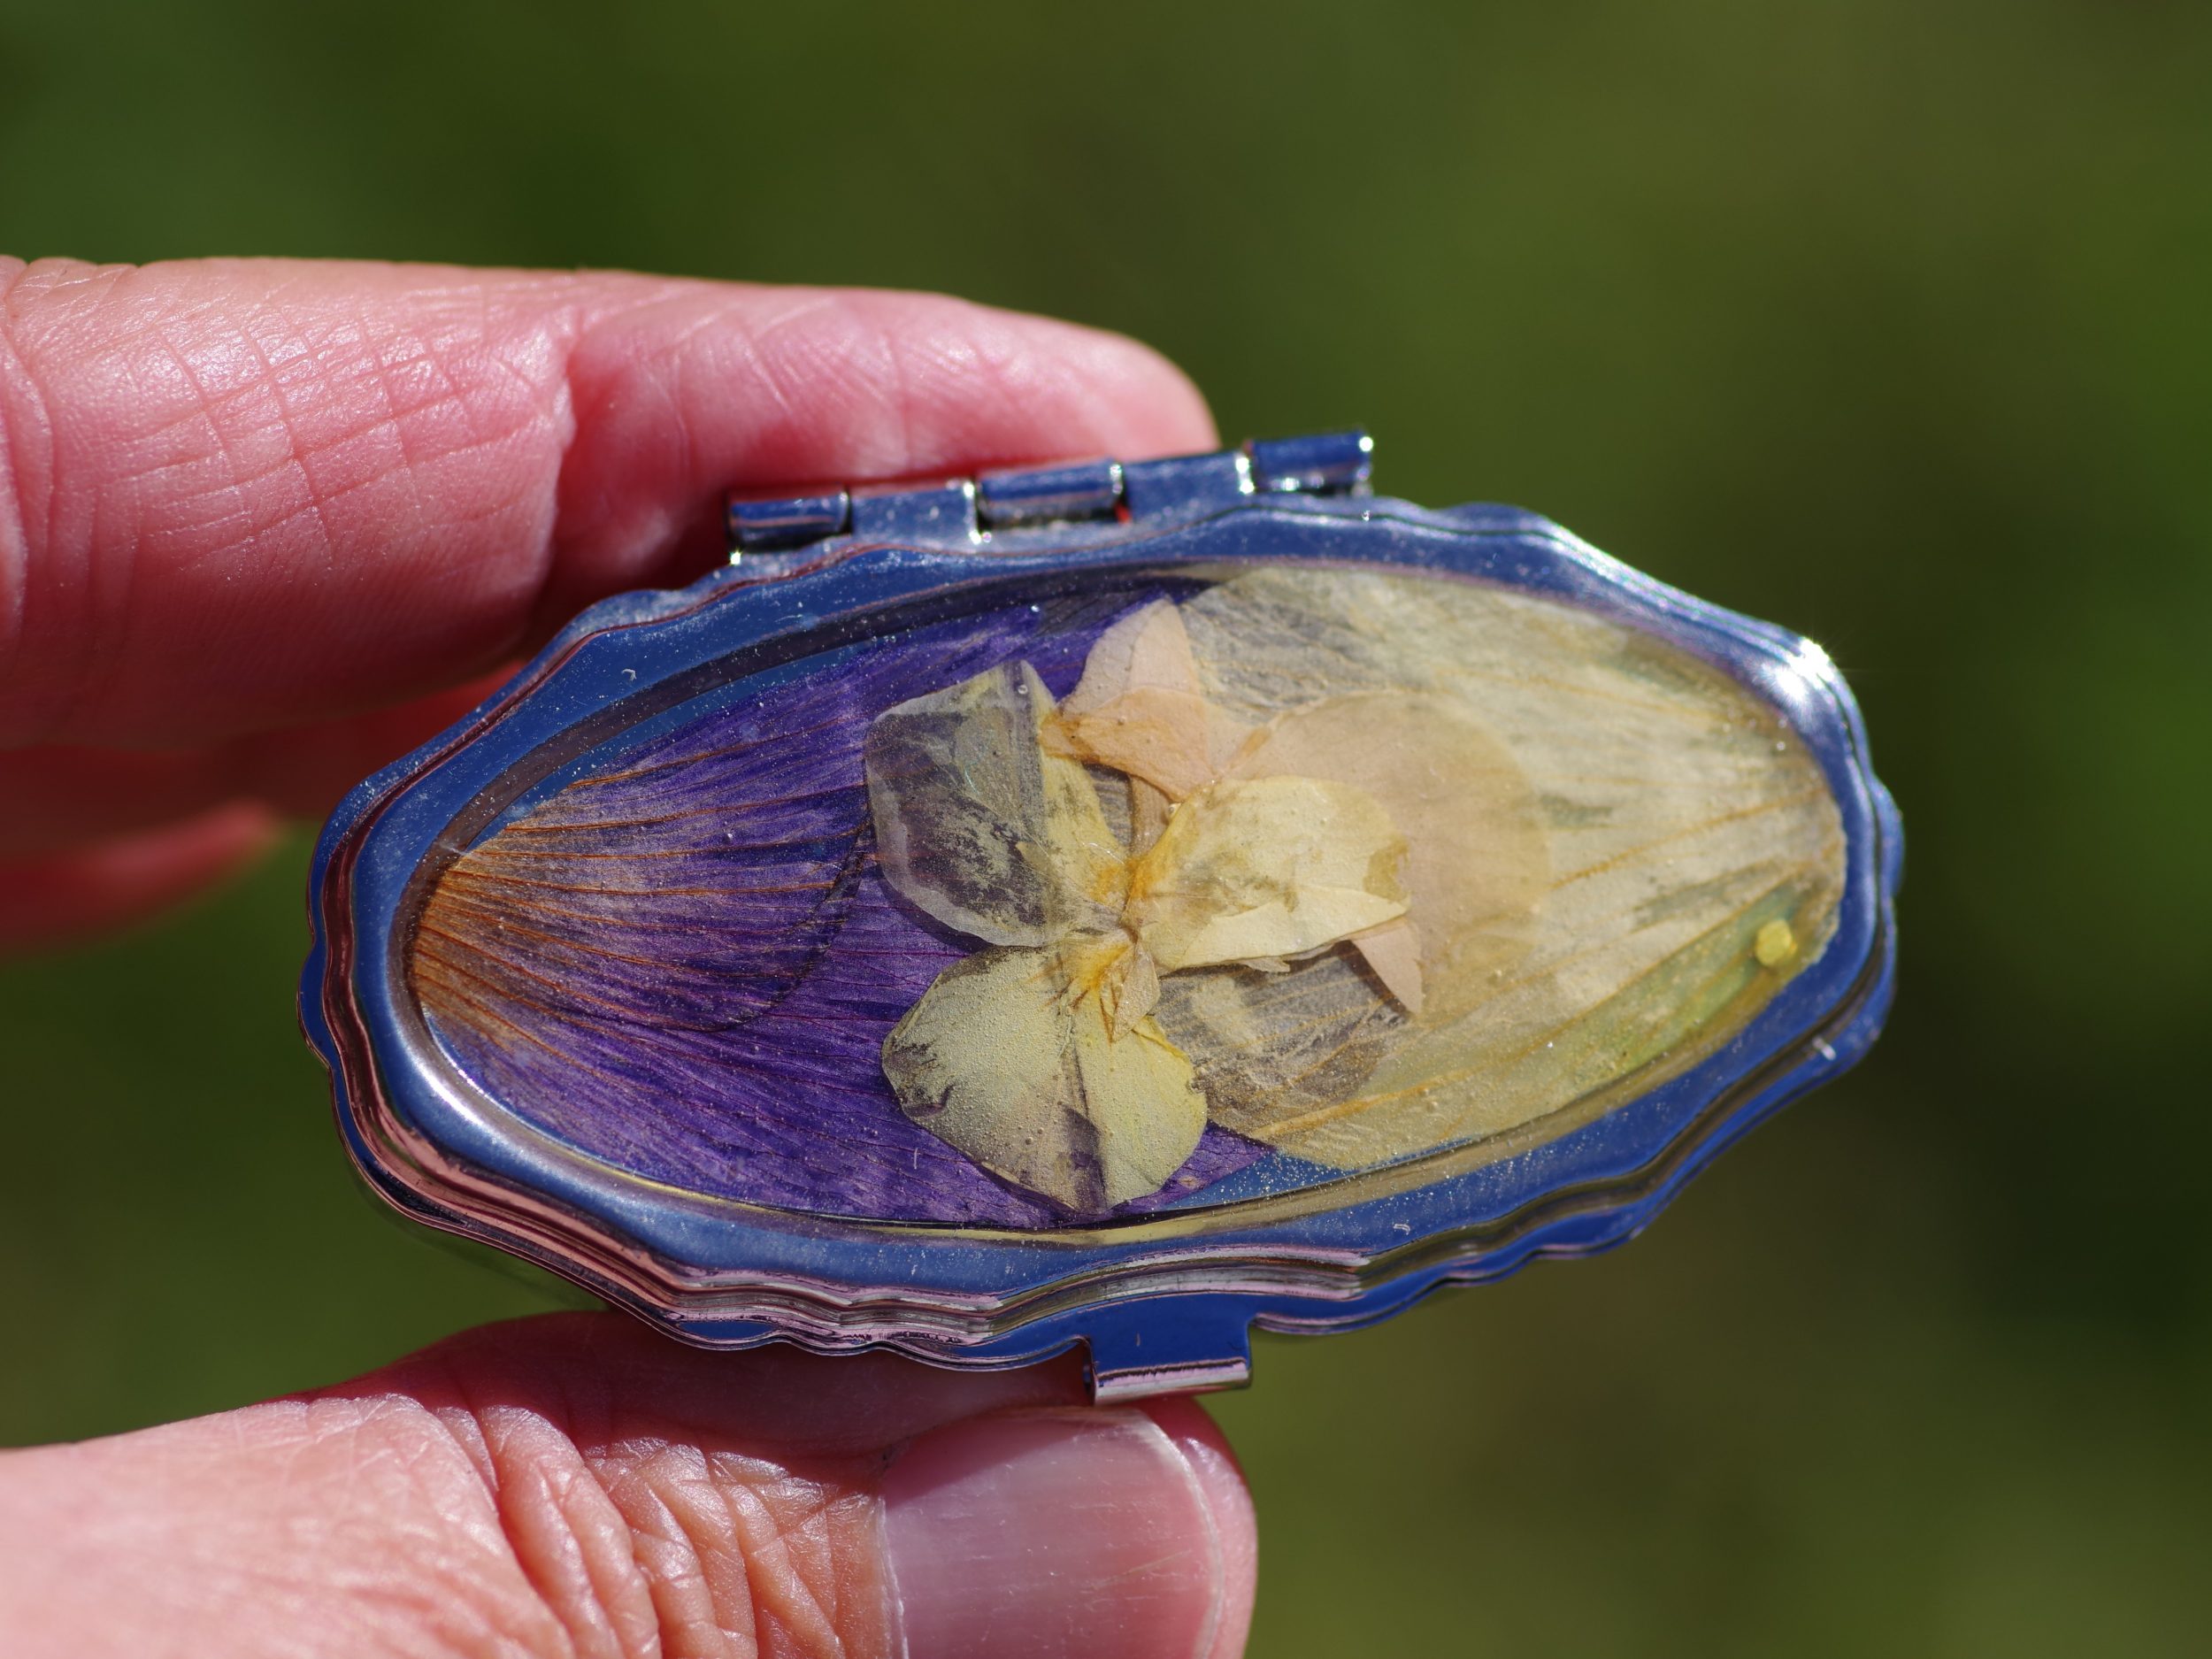 petite boite à pilule ovale joliment décorée de fleurs , décor bicolore violet et jaune, avec une mini pensée jaune. Le boitier est argenté